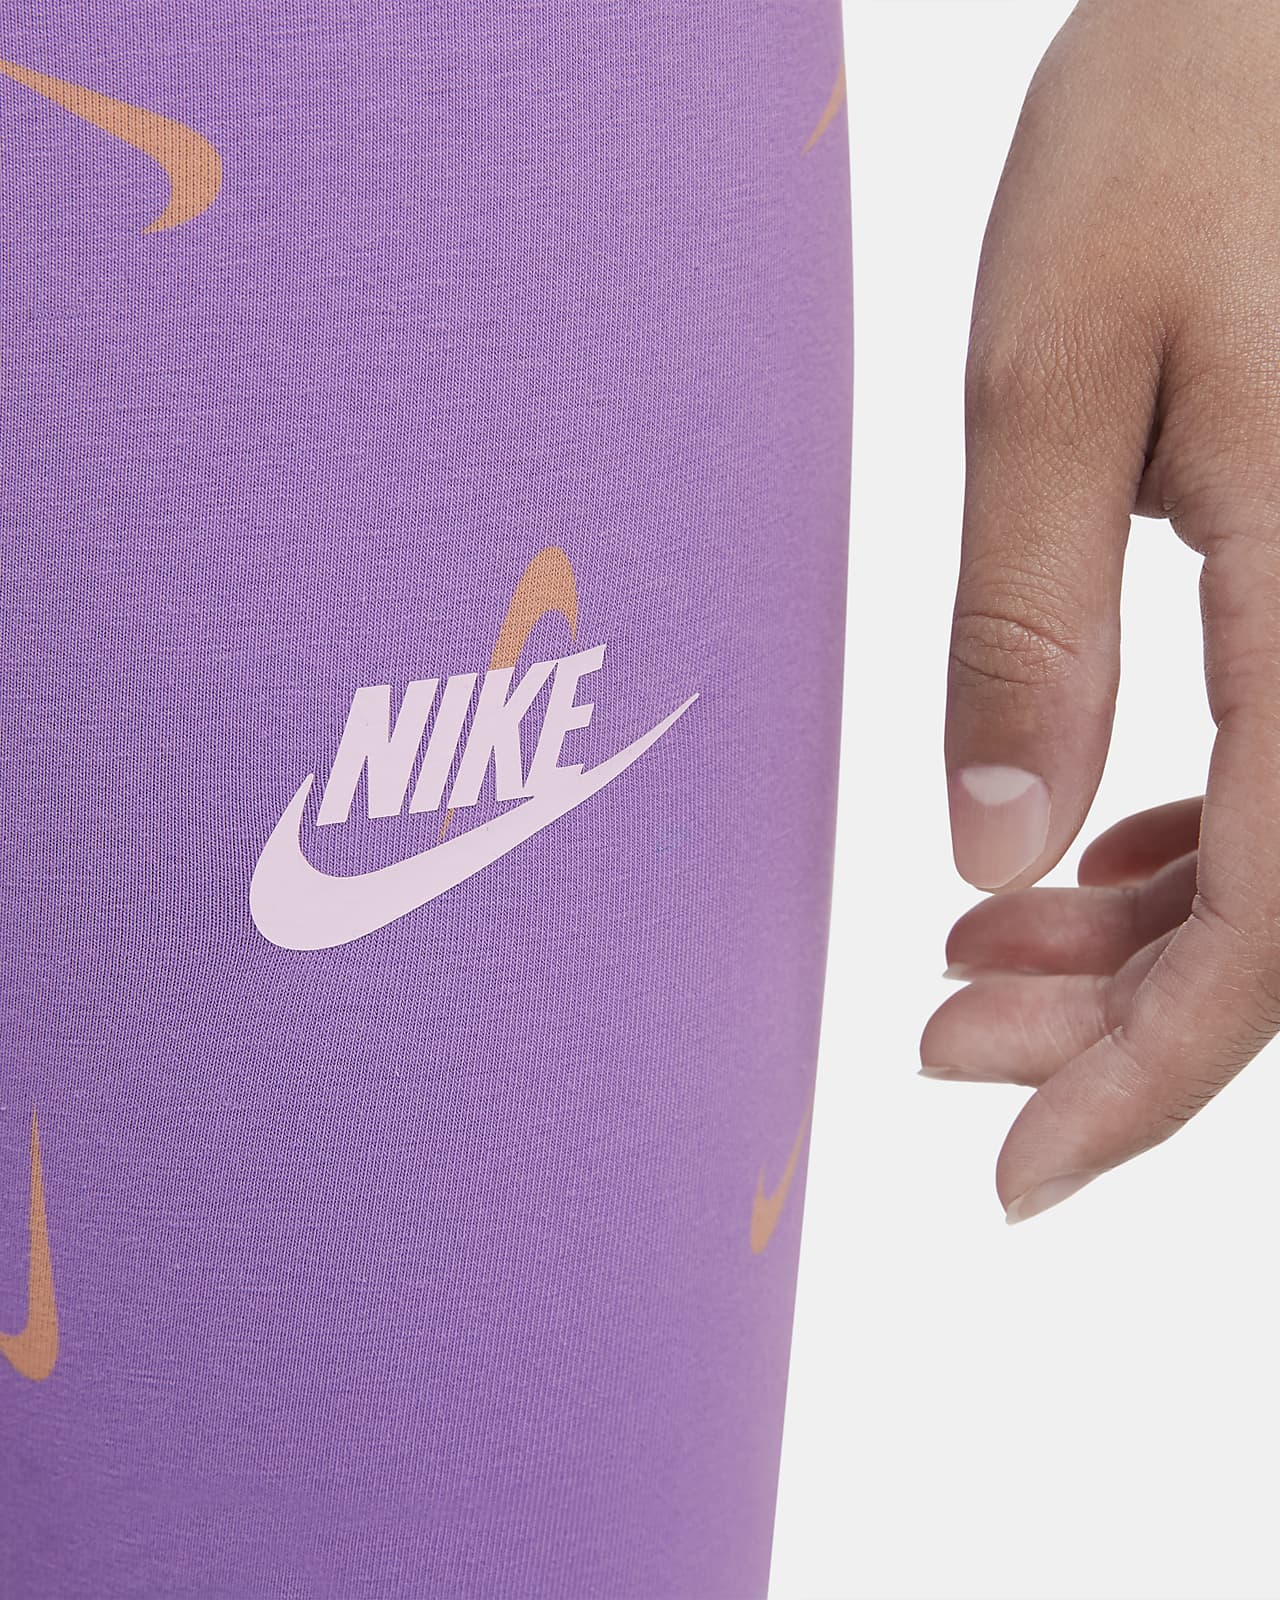 Legging girl Nike Favorites Swoosh - Nike - Brands - Lifestyle